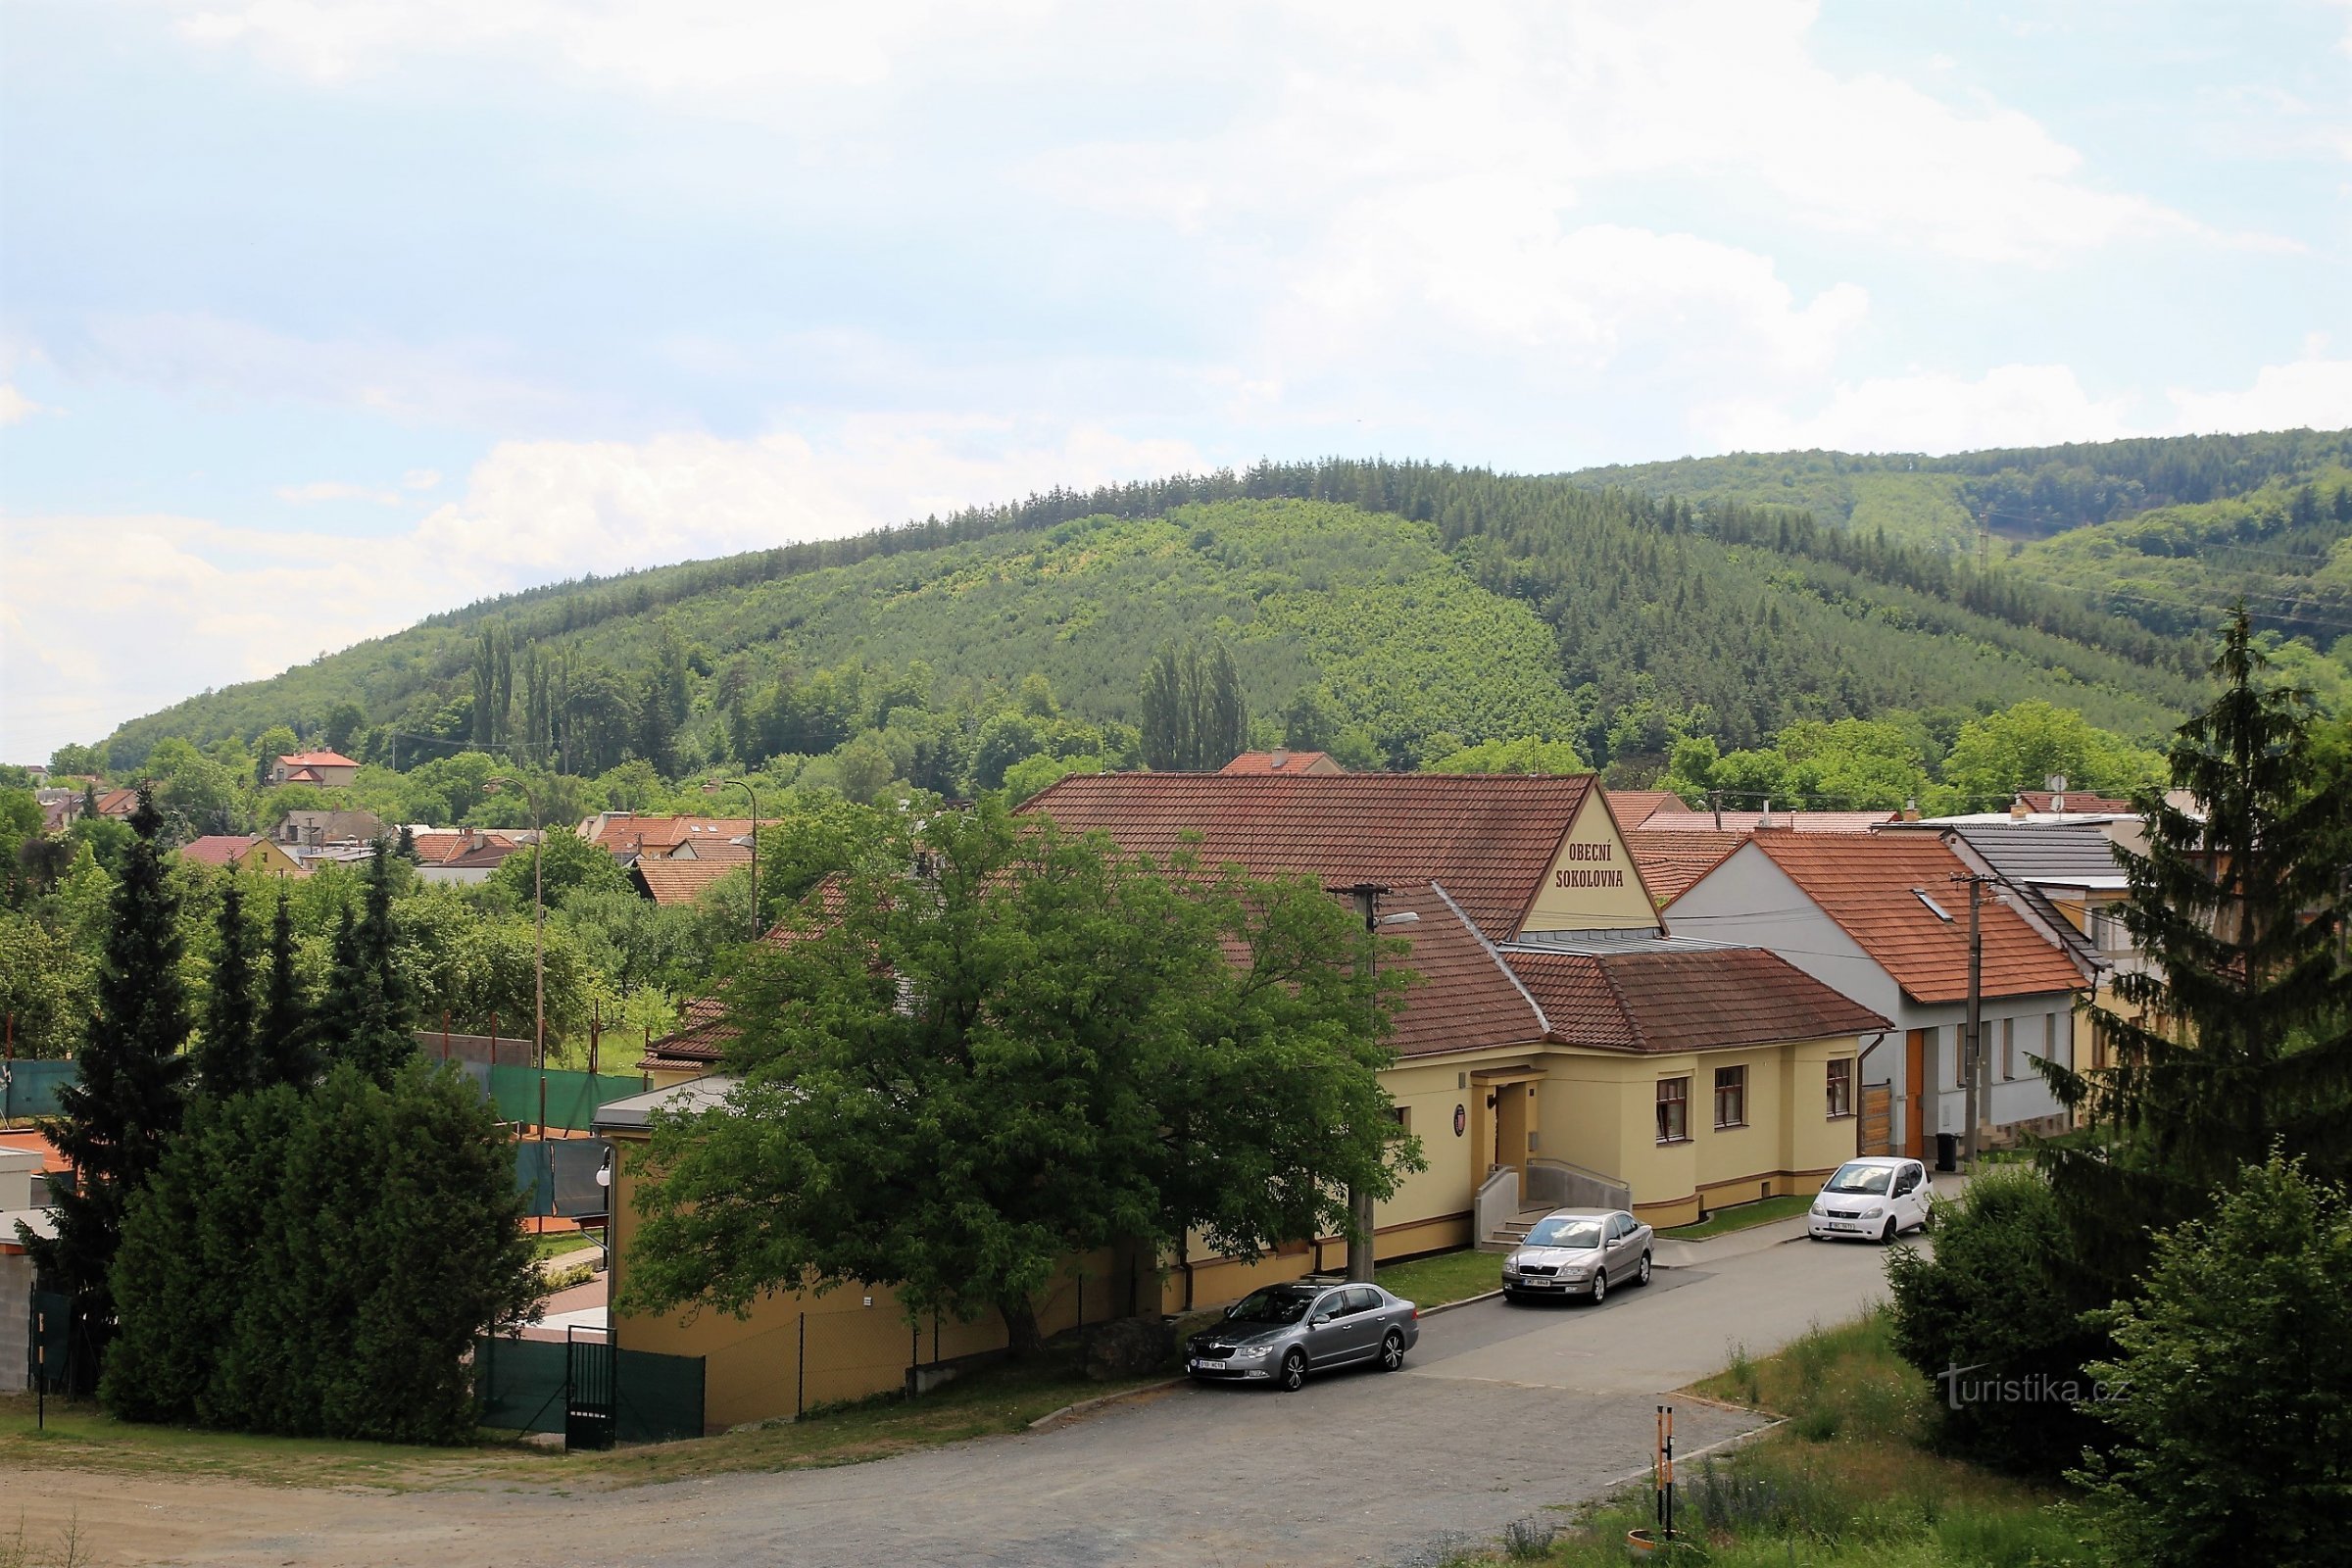 Άποψη του χωριού και της χαρακτηριστικής κορυφής Ostrá hora